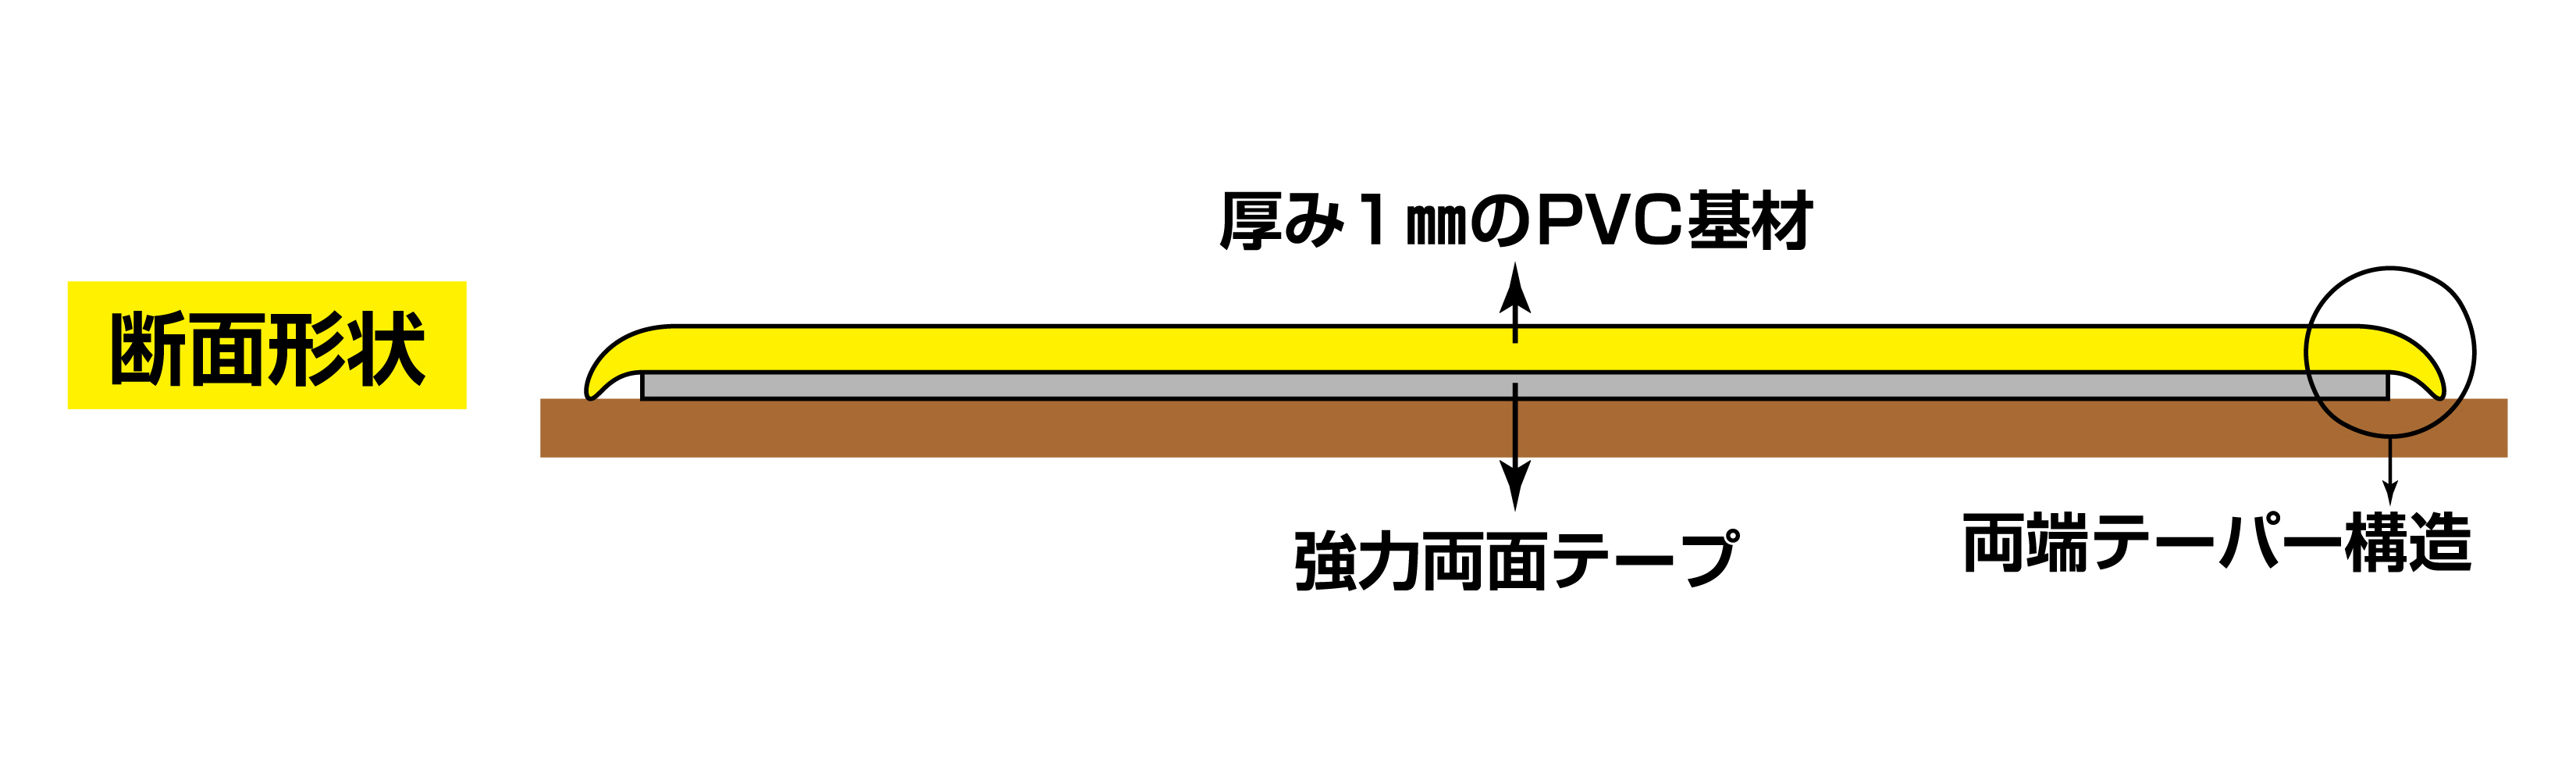 高耐久ラインテープ 403072 JU-510G,（安全標識・安全用品 日本緑十字社）,の通販 詳細情報,電設資材・電線・ケーブル・安全用品  ネット通販 Watanabe 電設資材 電線 ケーブル ネット 通販 Watanabe